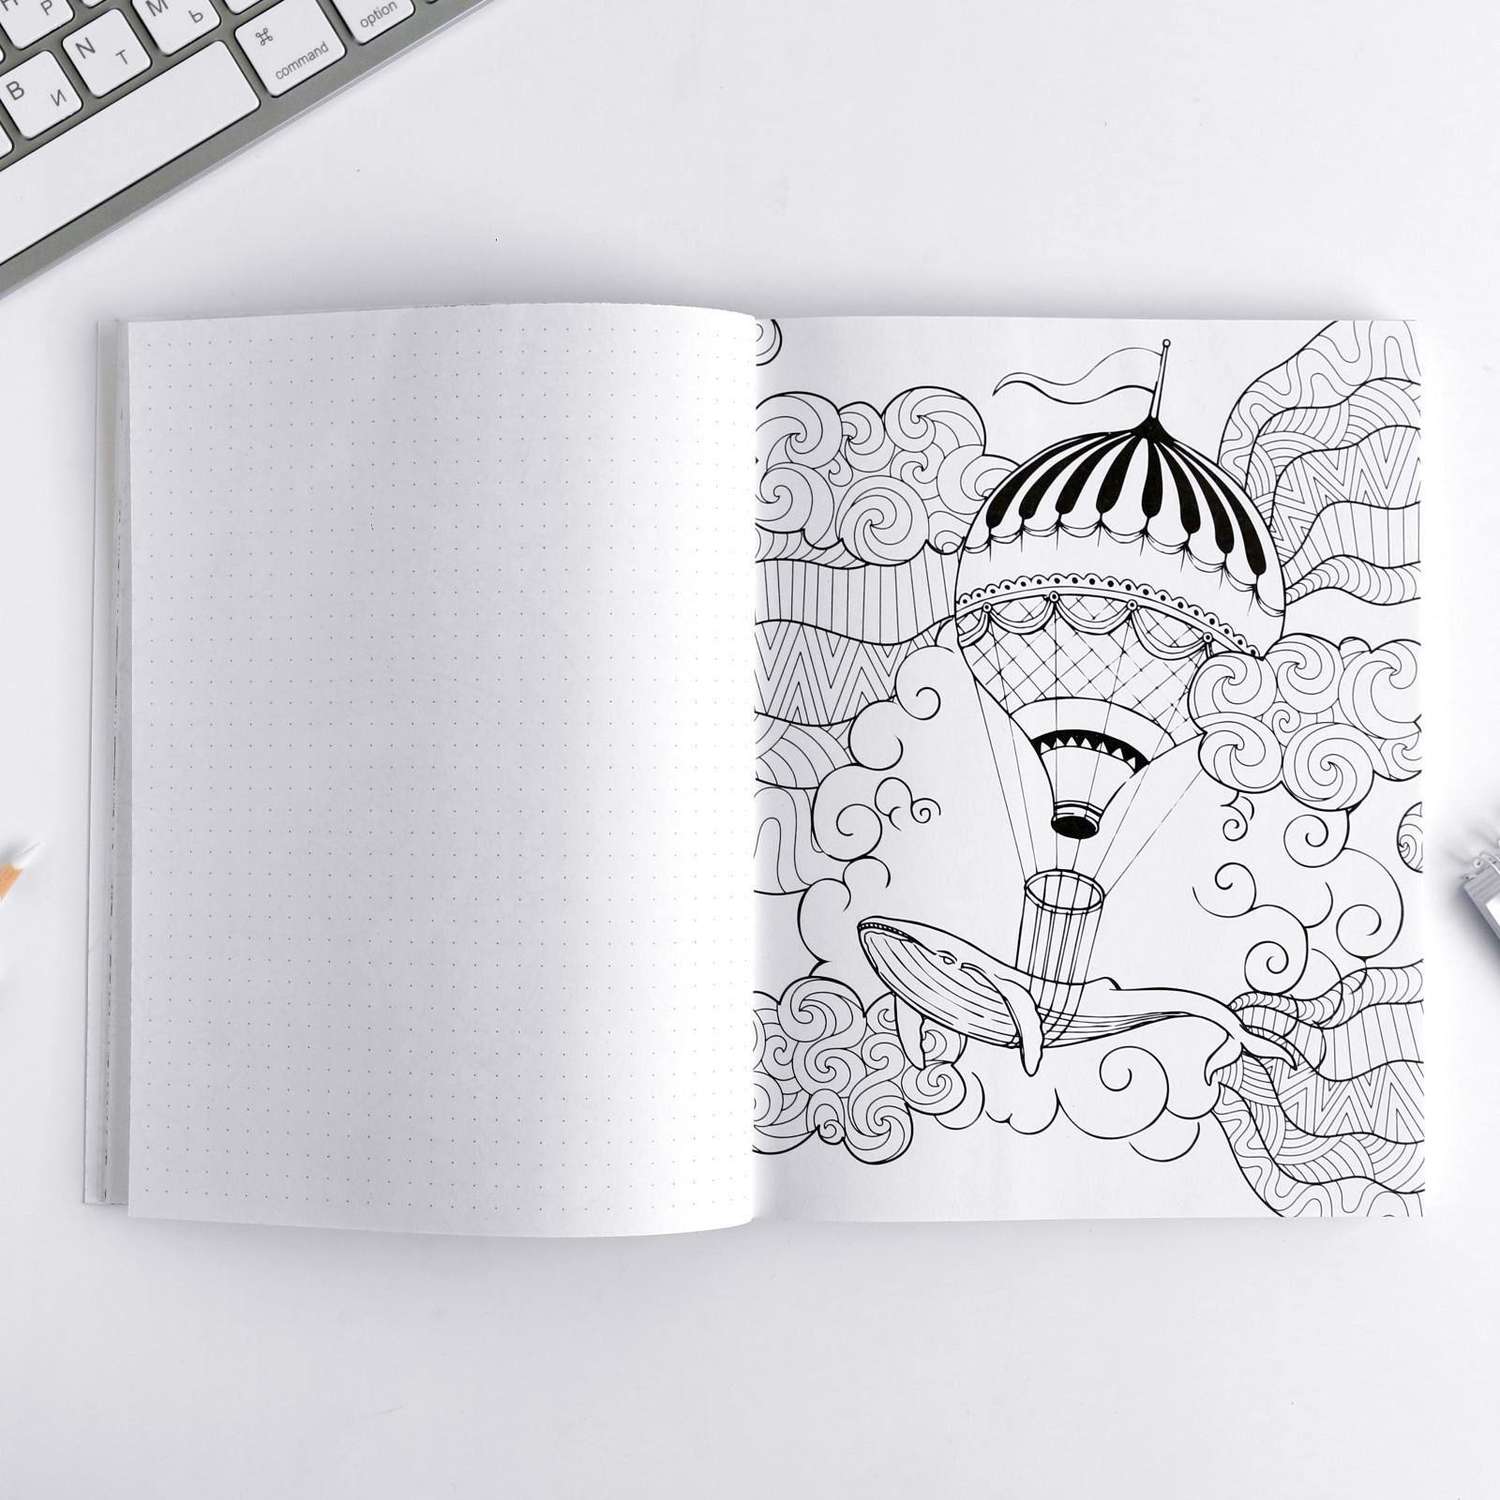 Ежедневник-смешбук ArtFox с раскраской антистресс «365 творческий дней» А5 80 листов - фото 4